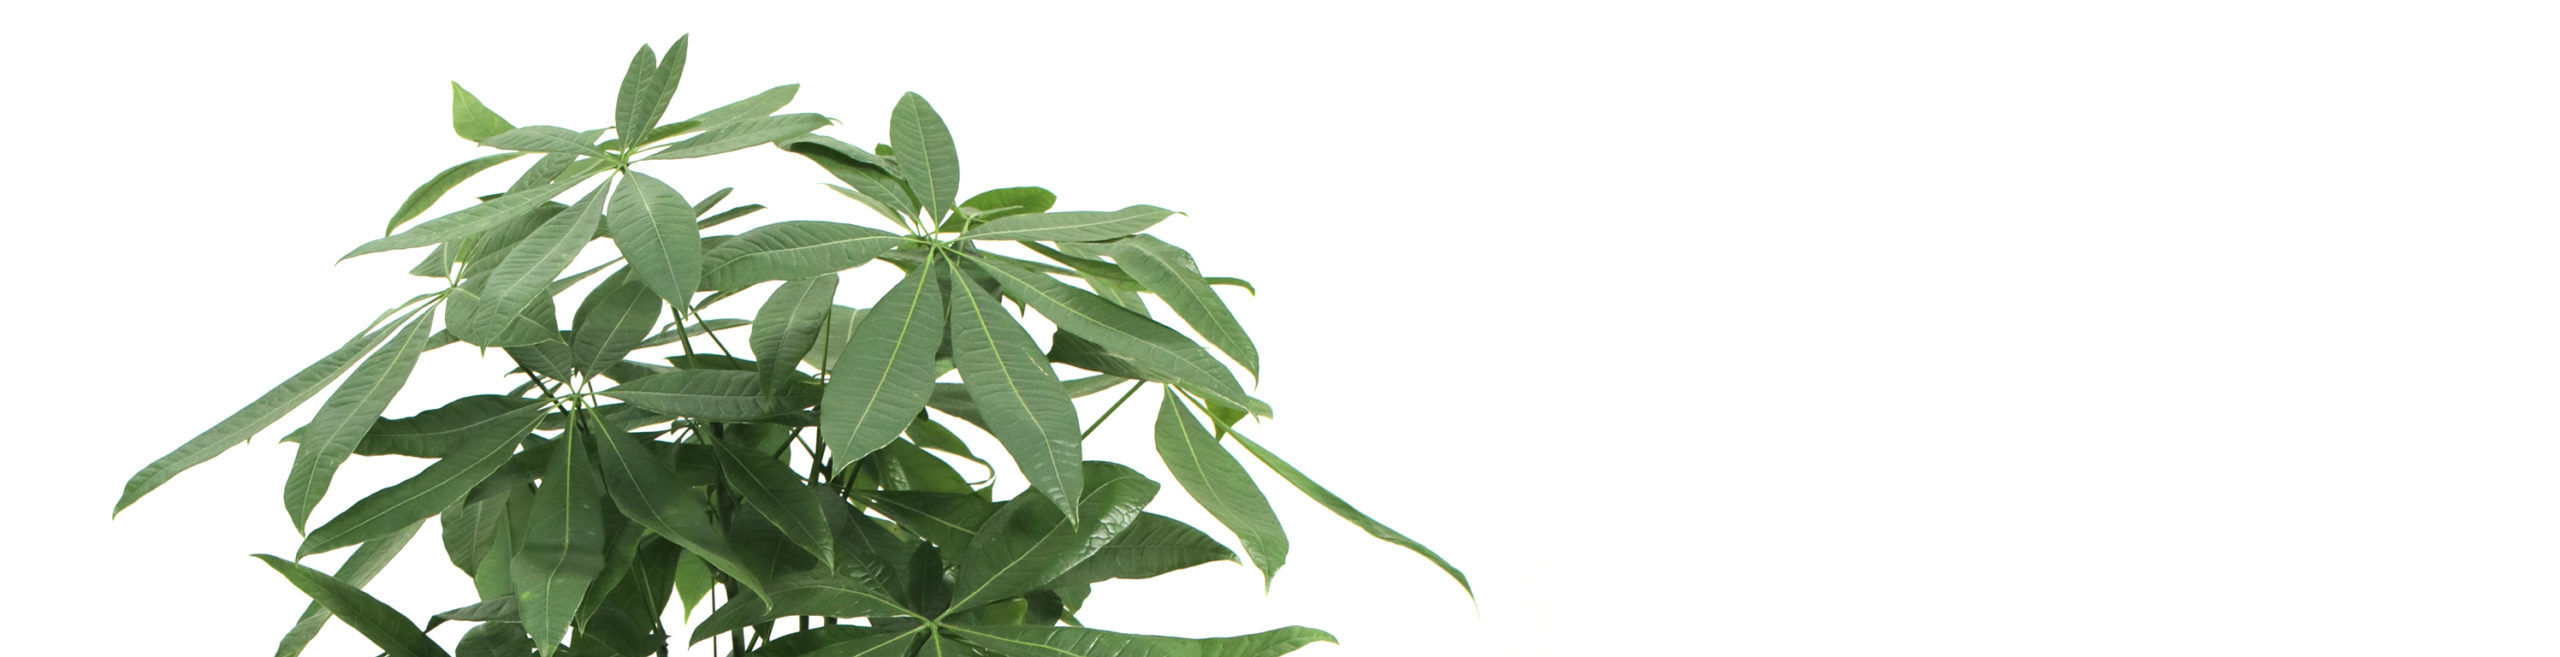 コラム パキラの基本情報と豆知識 観葉植物のプロがご紹介します Hanaterras ハナテラス 法人向けお祝い花 グリーンギフト